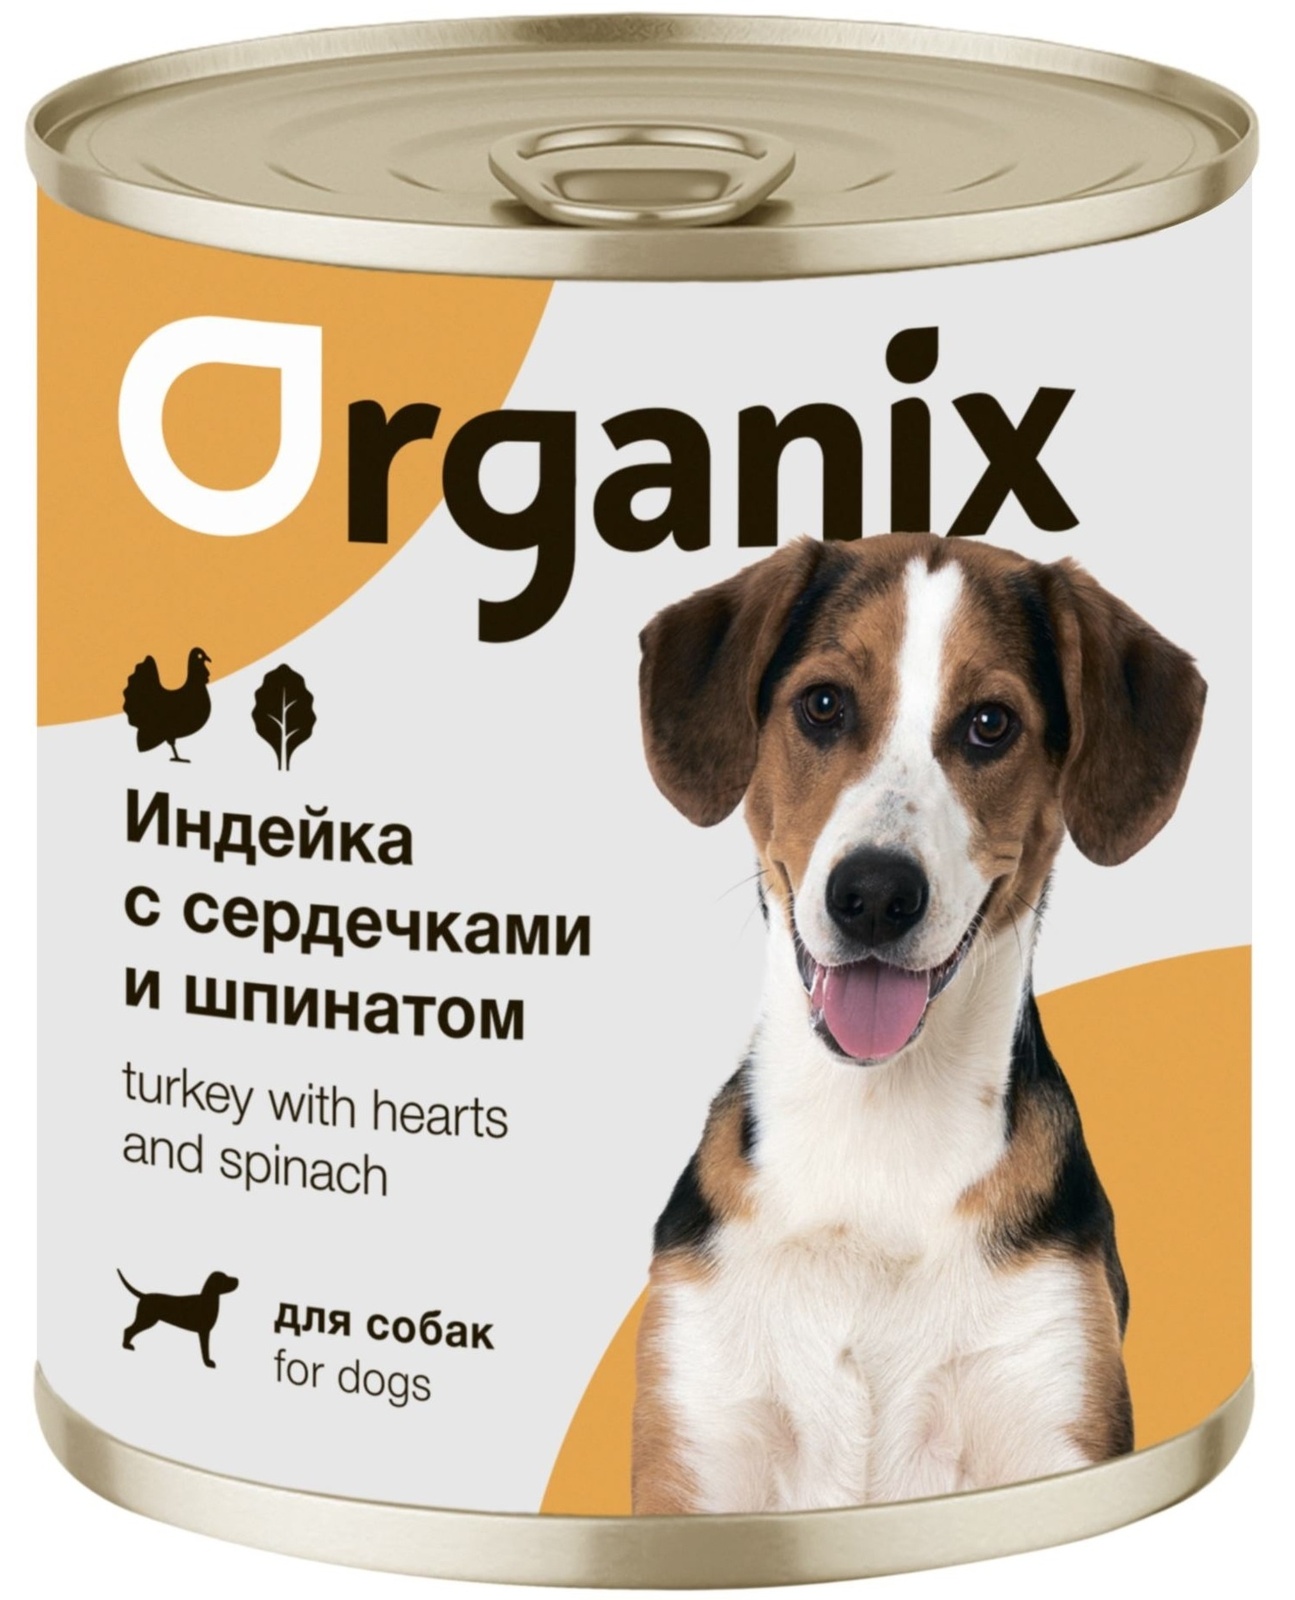 Organix консервы Organix консервы для собак Индейка с сердечками и шпинатом (750 г) organix консервы organix консервы для собак кролик с зеленым горошком 750 г